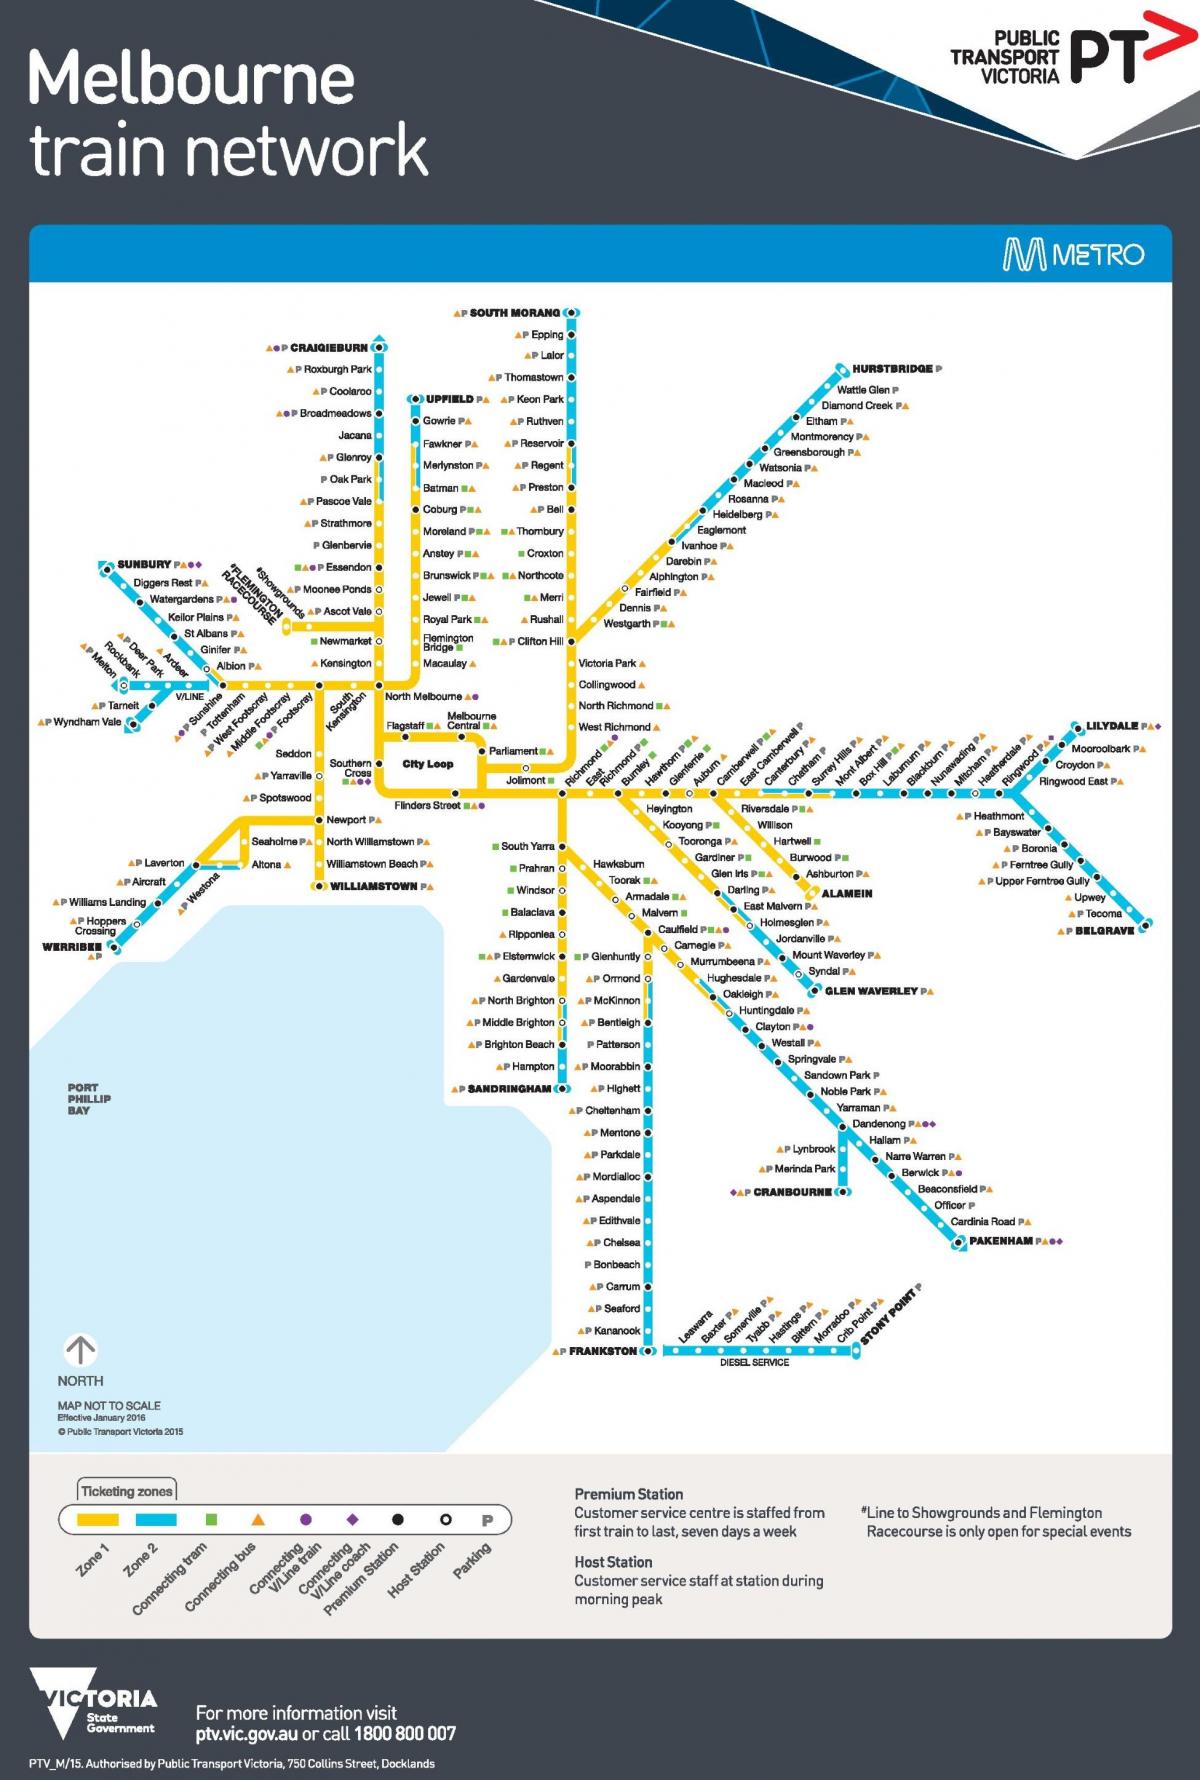 Mapa das estações do metrô de Melbourne